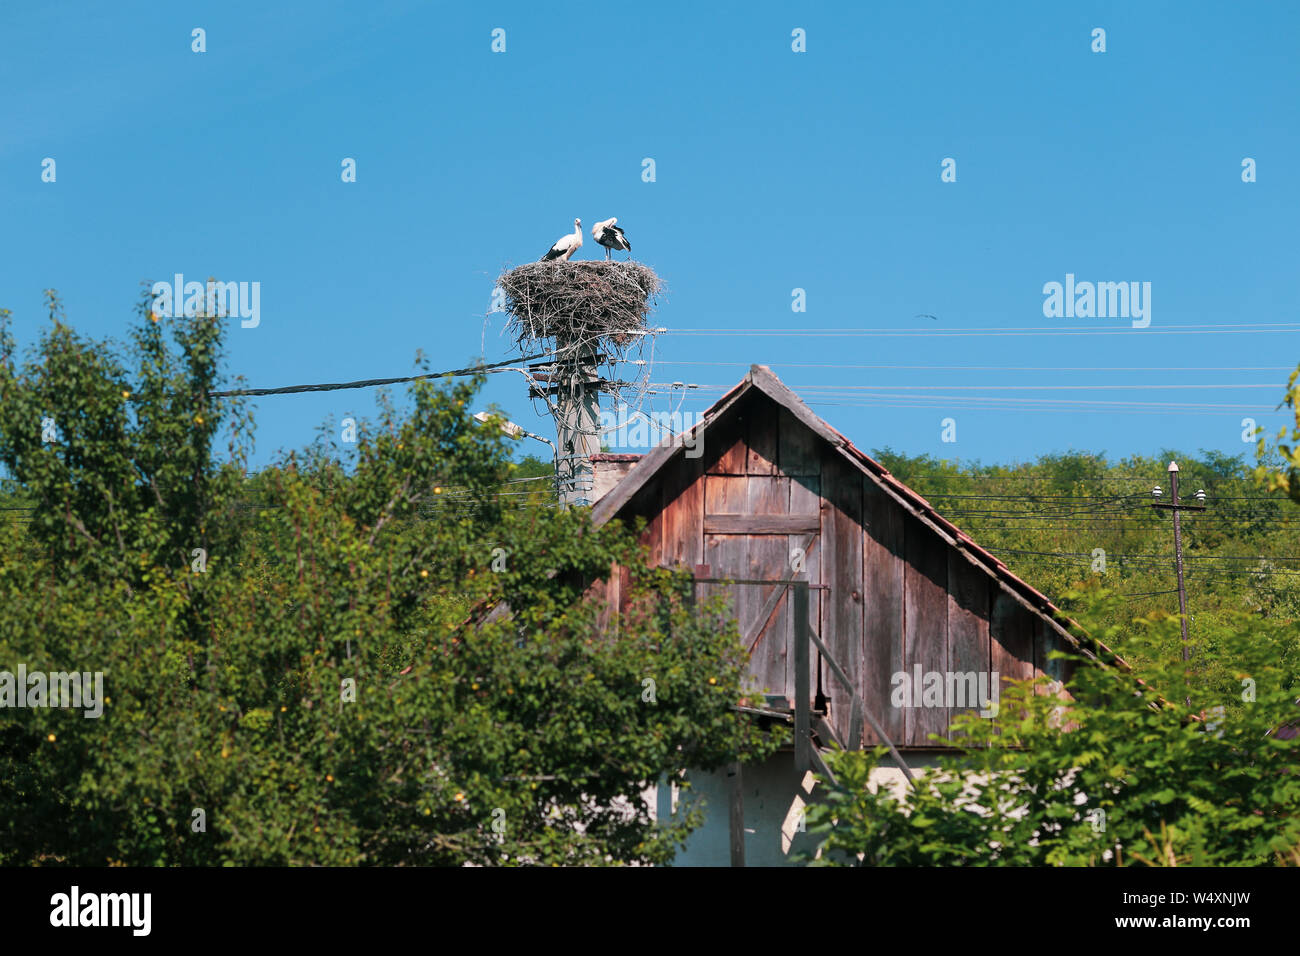 Familie der Störche leben auf einem Nest sie auf einem Strommast in einem ländlichen Gebiet von Rumänien gemacht. Wilde Tiere zwischen Menschen. Stockfoto